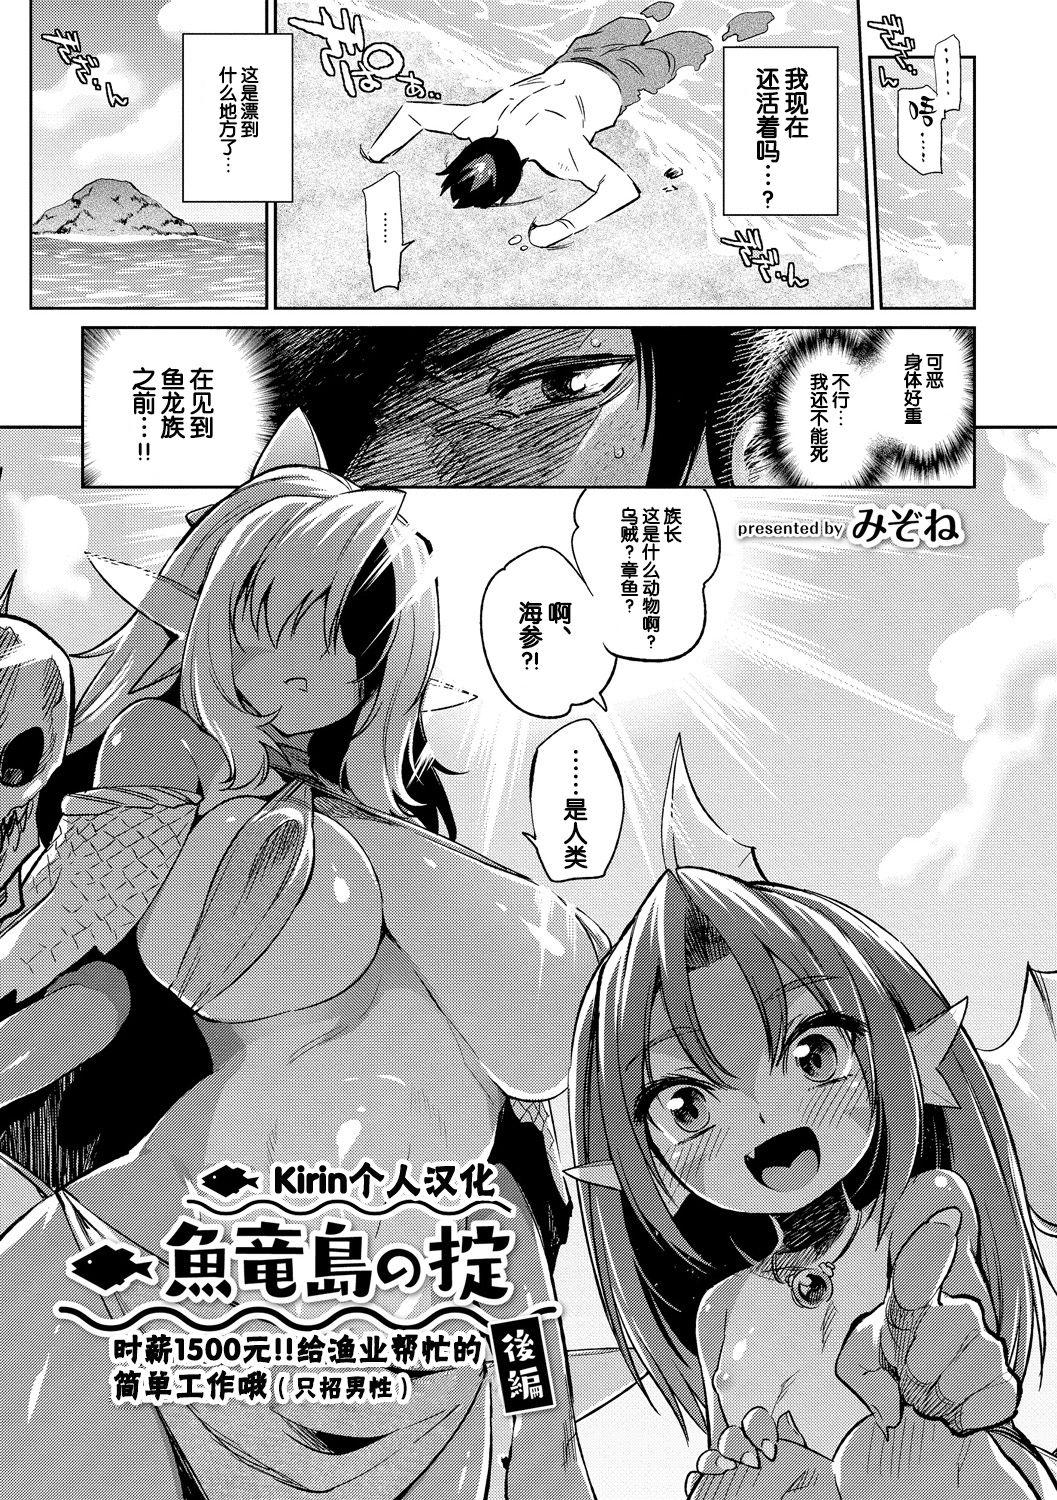 Fake Tits Gyoryuushima no Okite Amateurs Gone - Page 1